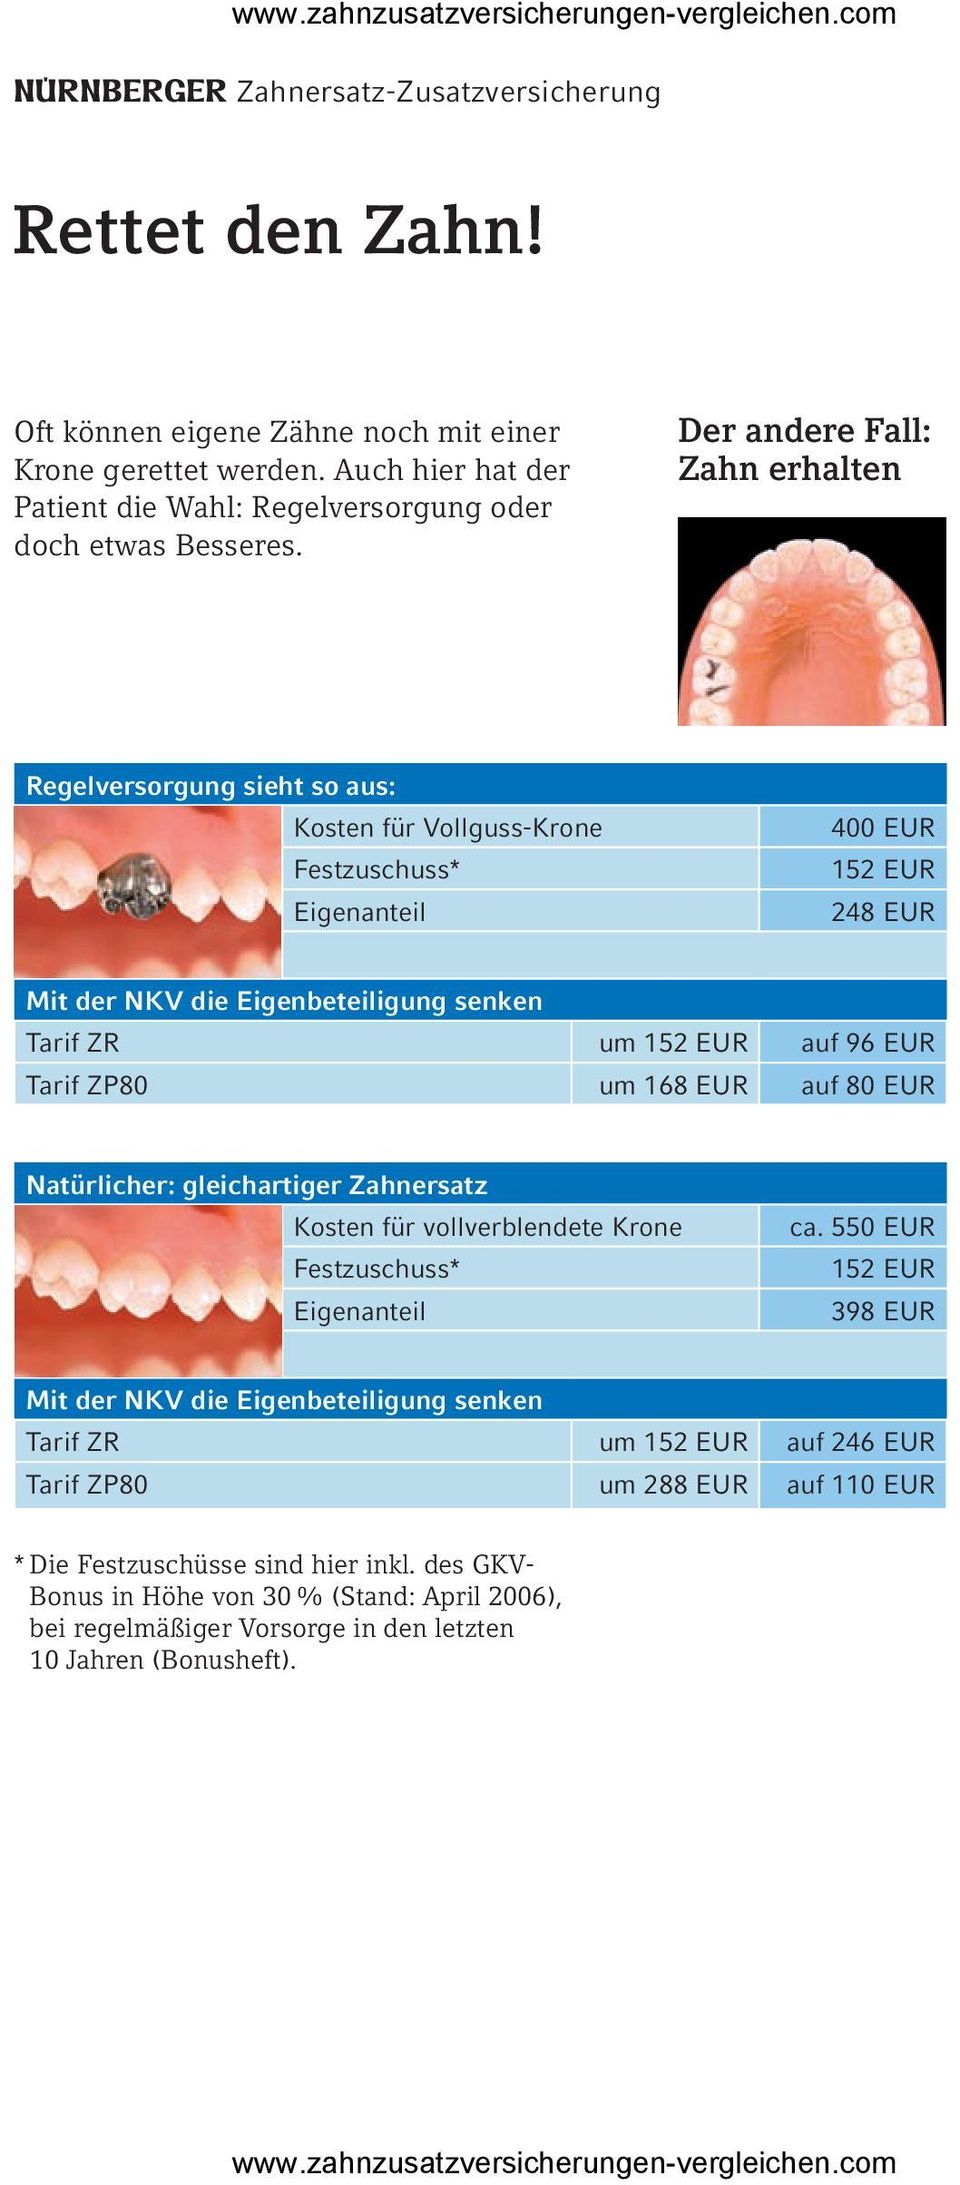 Der andere Fall: Zahn erhalten Regelversorgung sieht so aus: Kosten für Vollguss-Krone 400 EUR 152 EUR 248 EUR Tarif ZR um 152 EUR auf 96 EUR Tarif ZP80 um 168 EUR auf 80